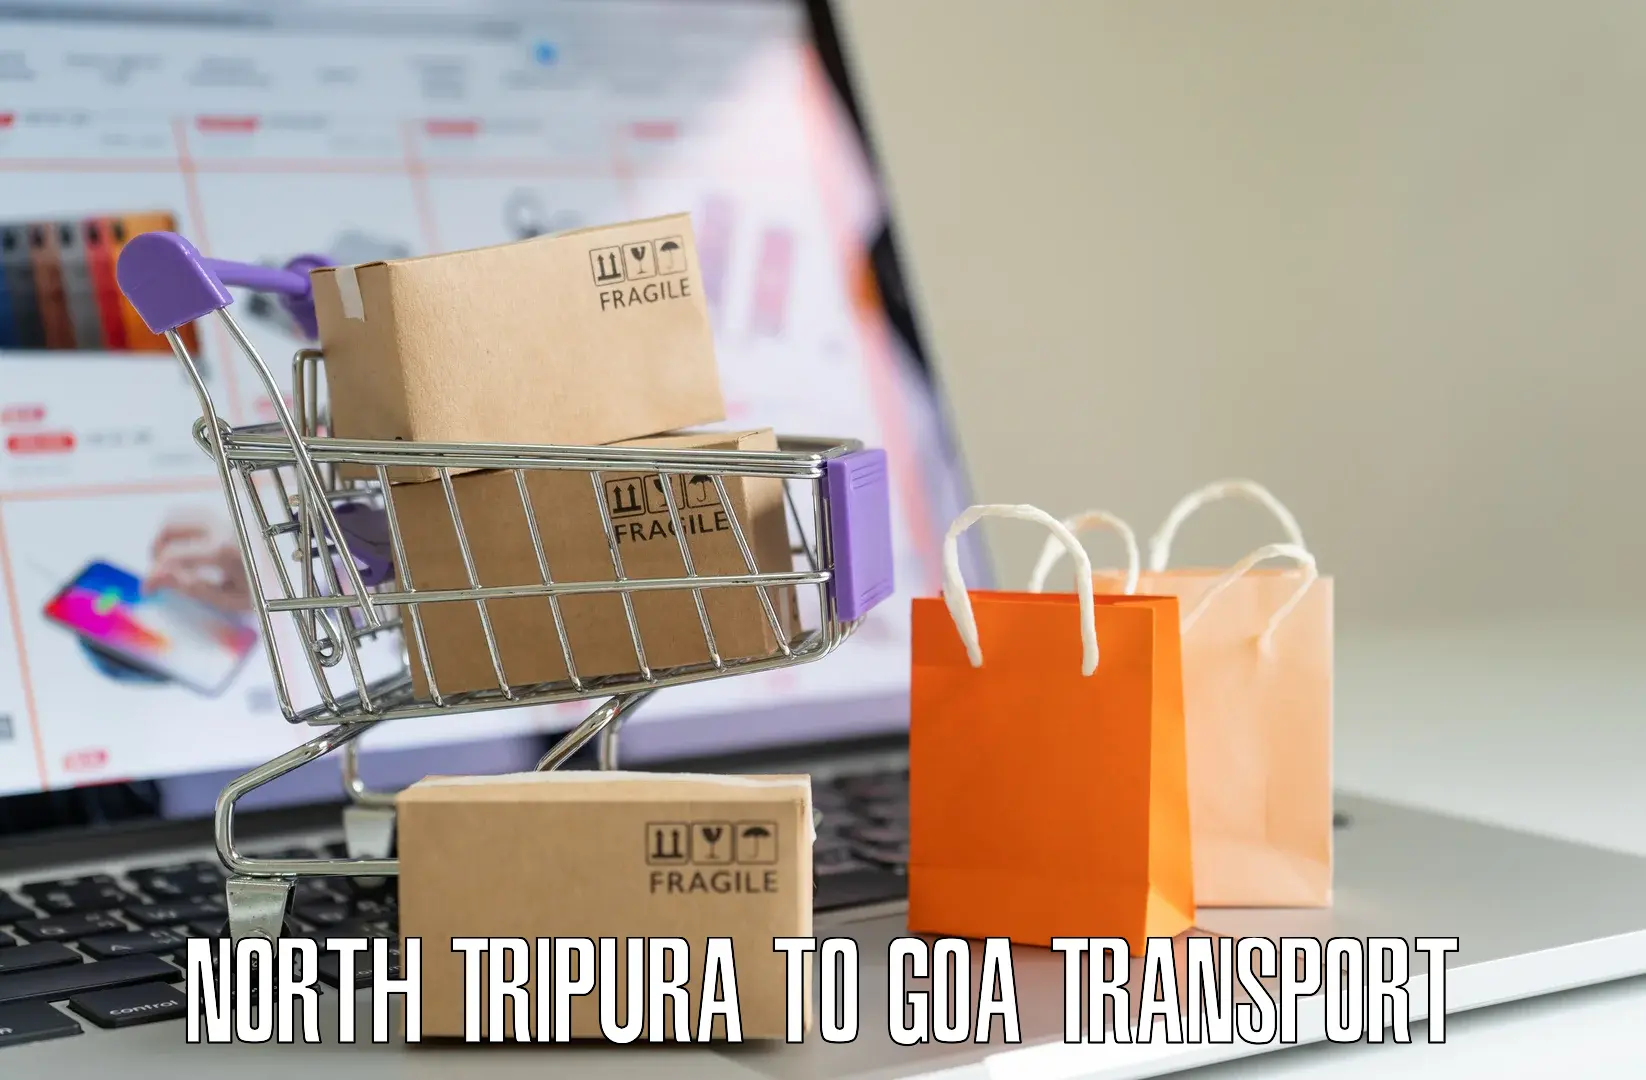 Daily parcel service transport in North Tripura to Vasco da Gama